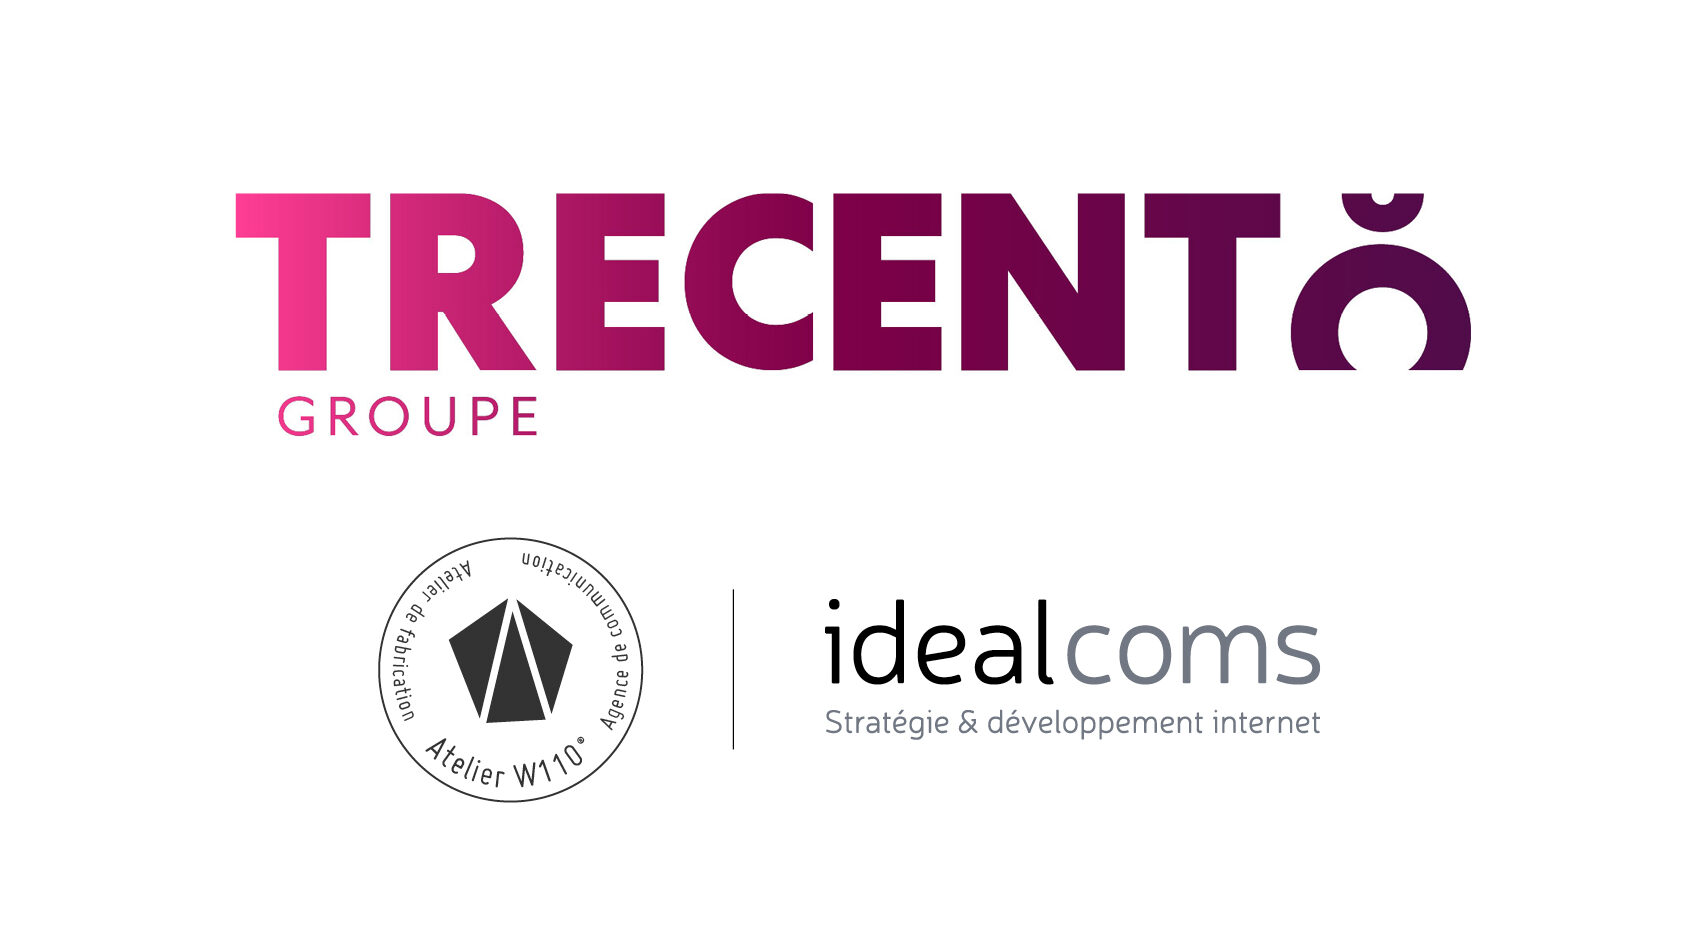 Groupe TRECENTO : Atelier W110 et idealcoms